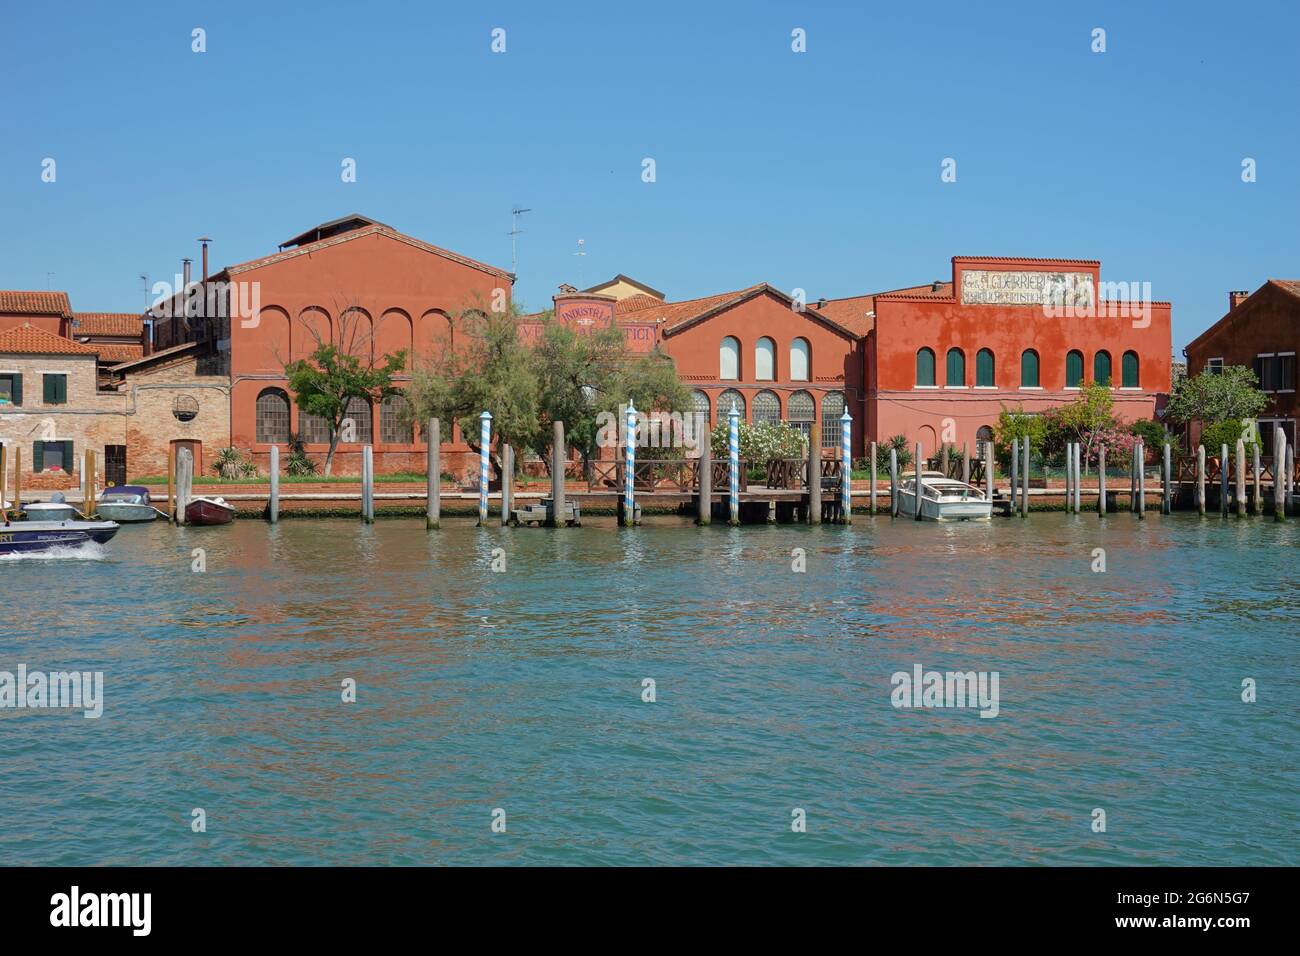 Vetisch Muran, ist eine Inselgruppe nordöstlich der Altstadt von Venedig in der Lagune von Venedig. Sie ist bekannt für ihre Glaskunst, lebt Foto Stock